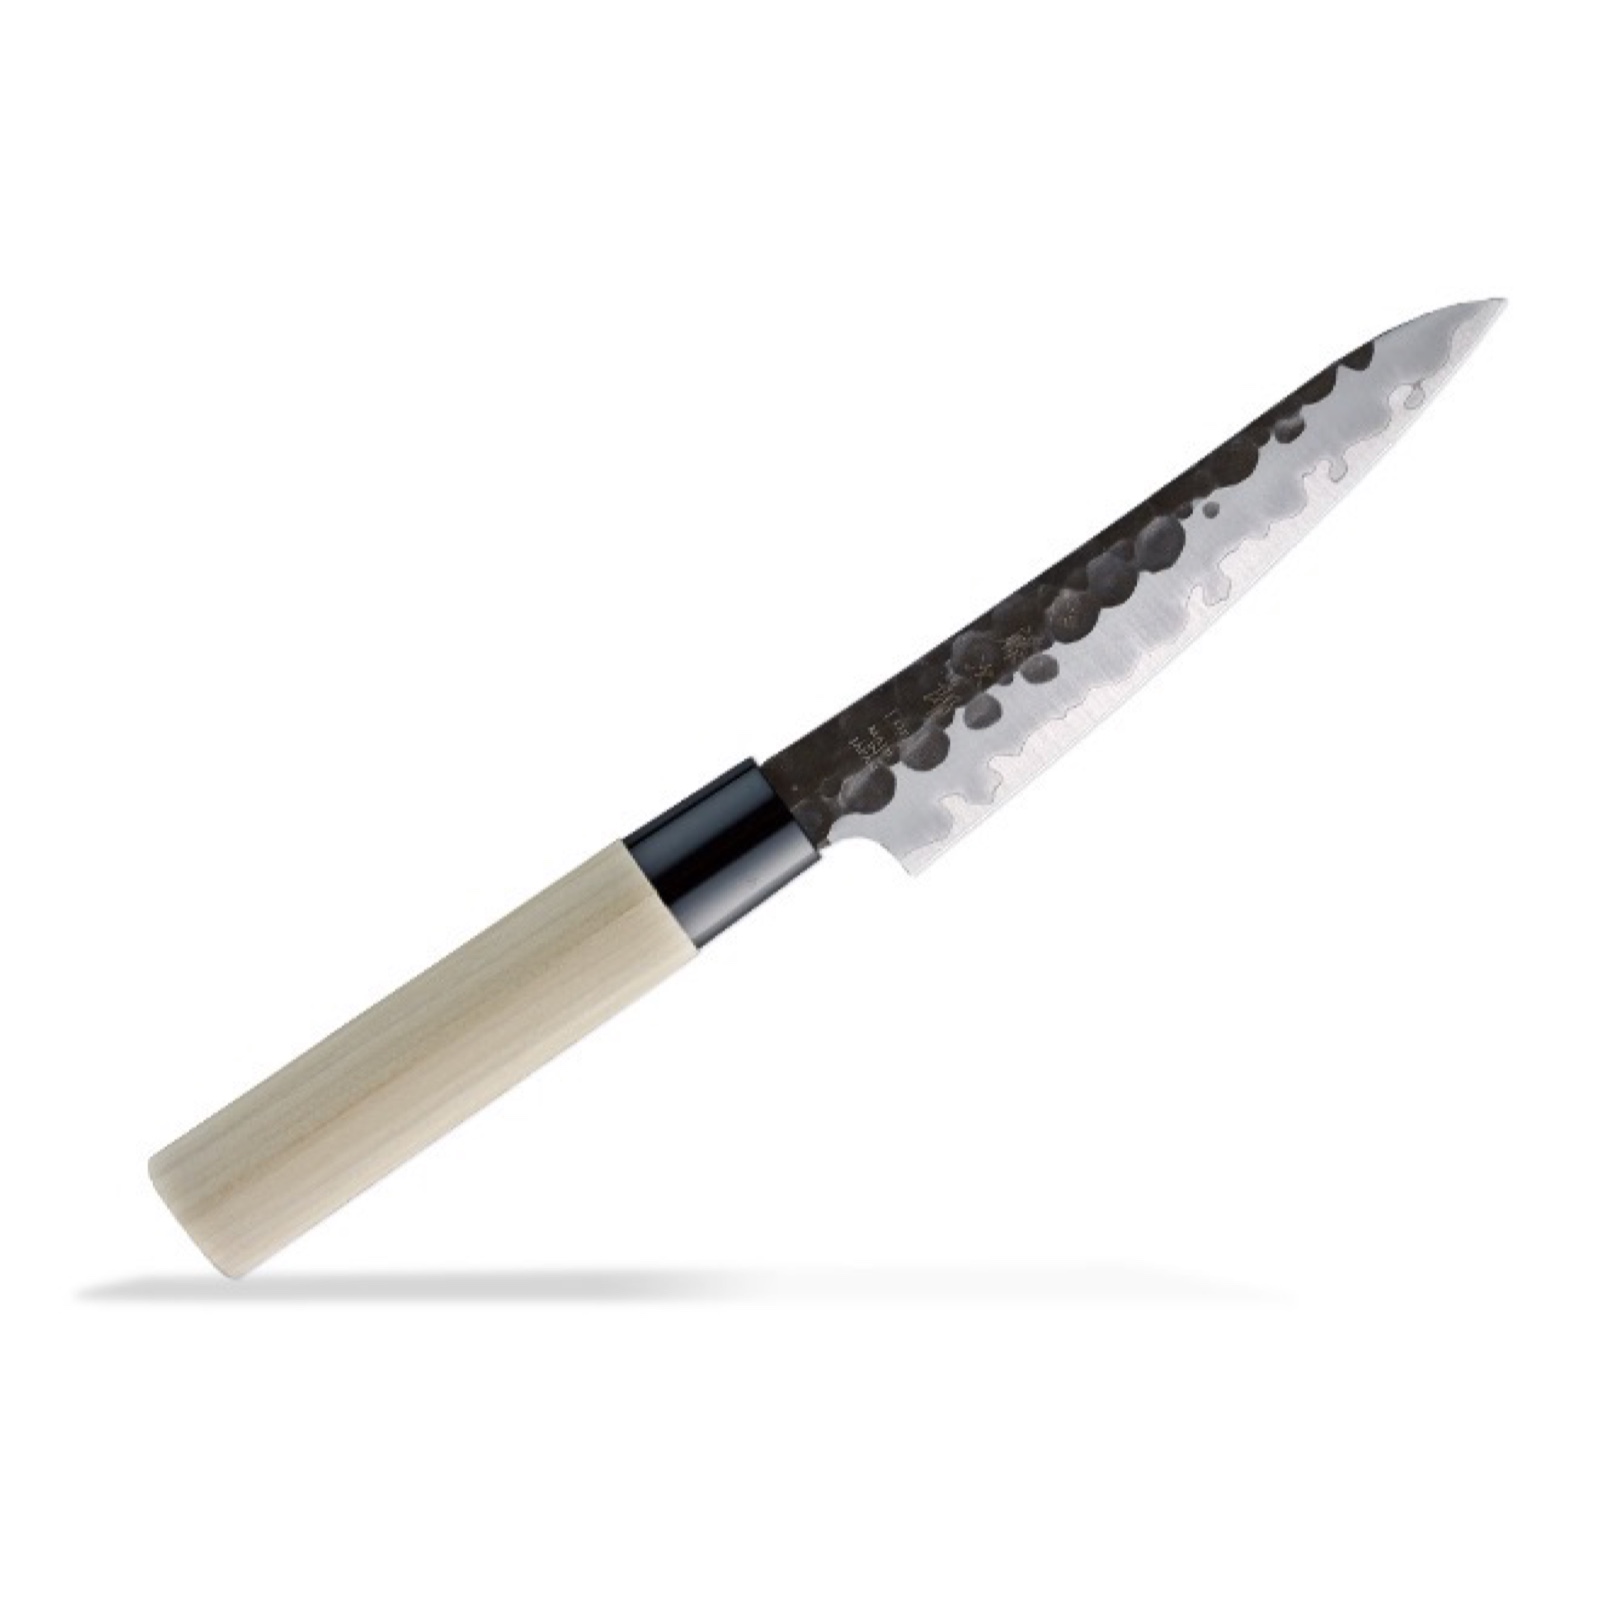 סכין עזר קטנה רב-תכליתית פֶּטִי 130מ״מ מחוזקת 3 שכבות: פלדת פחמן יפנית VG-10 עטופה פלדת אל-חלד גימור קורואיצ׳י שחור עם ריקוע פטיש טוג׳ירו יפן